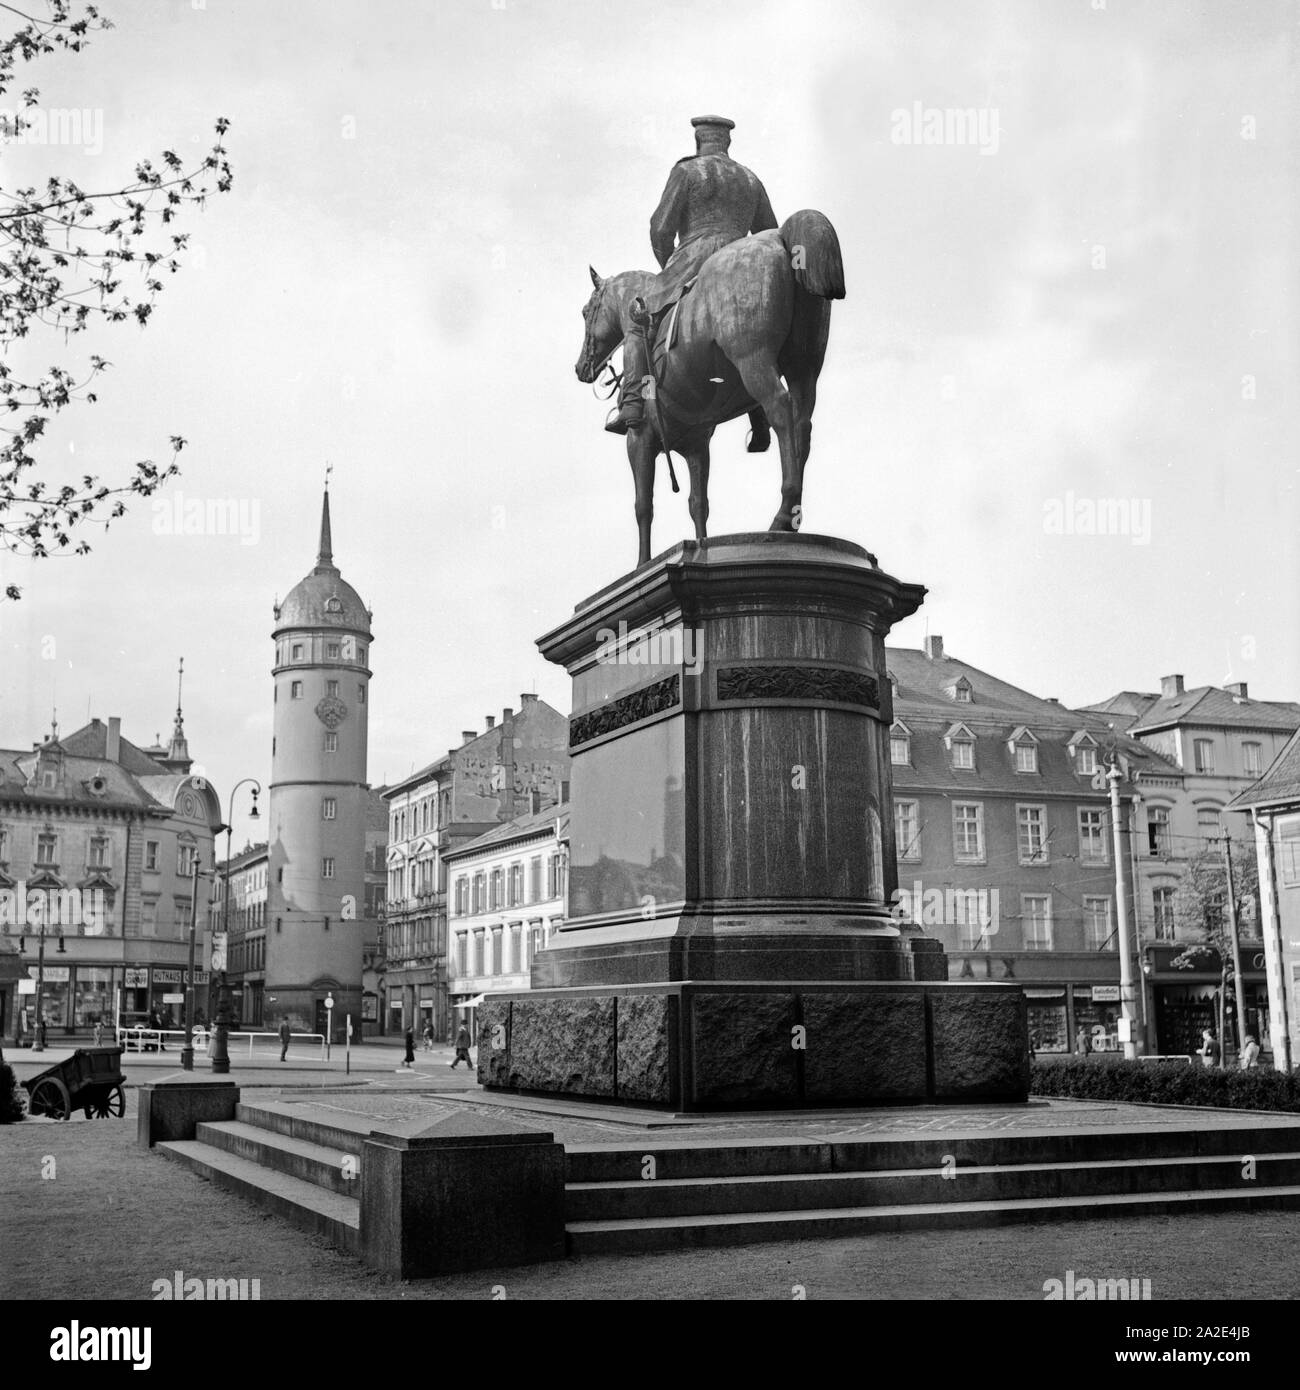 Reiterstandbild Ludwig IV. auf dem Markt di Darmstadt, Deutschland 1930er Jahre. La piazza del mercato con monment di Luigi IV a Darmstadt, Germania 1930s. Foto Stock